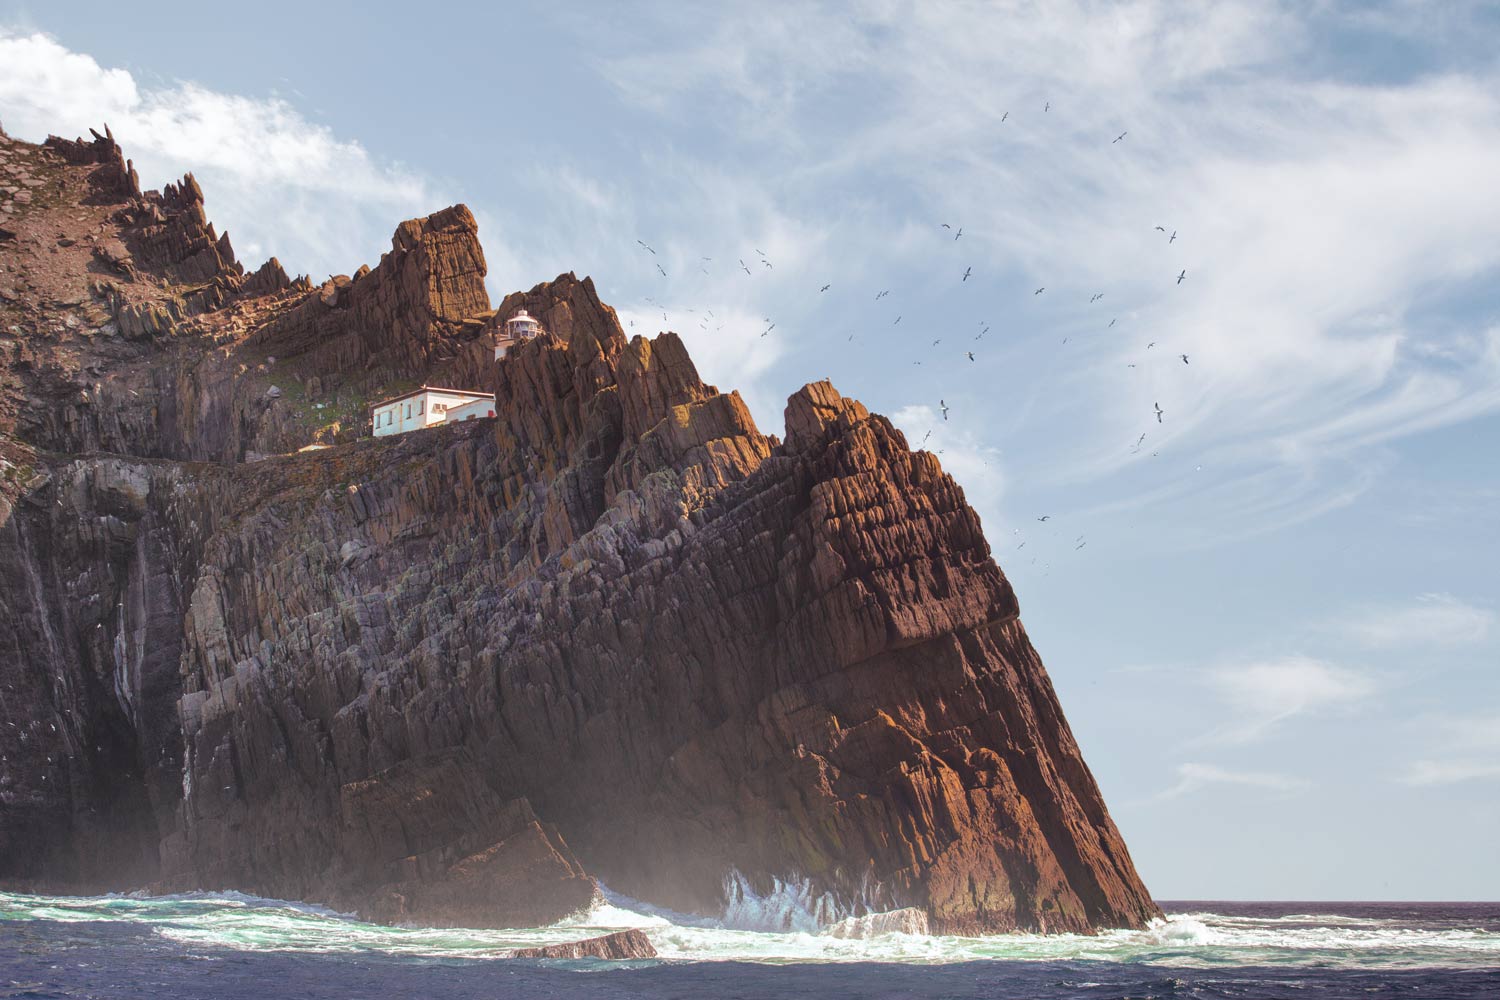 Drehort Star Wars: Das ist die Insel auf der sich Luke Skywalker versteckt © PhotoTravelNomads